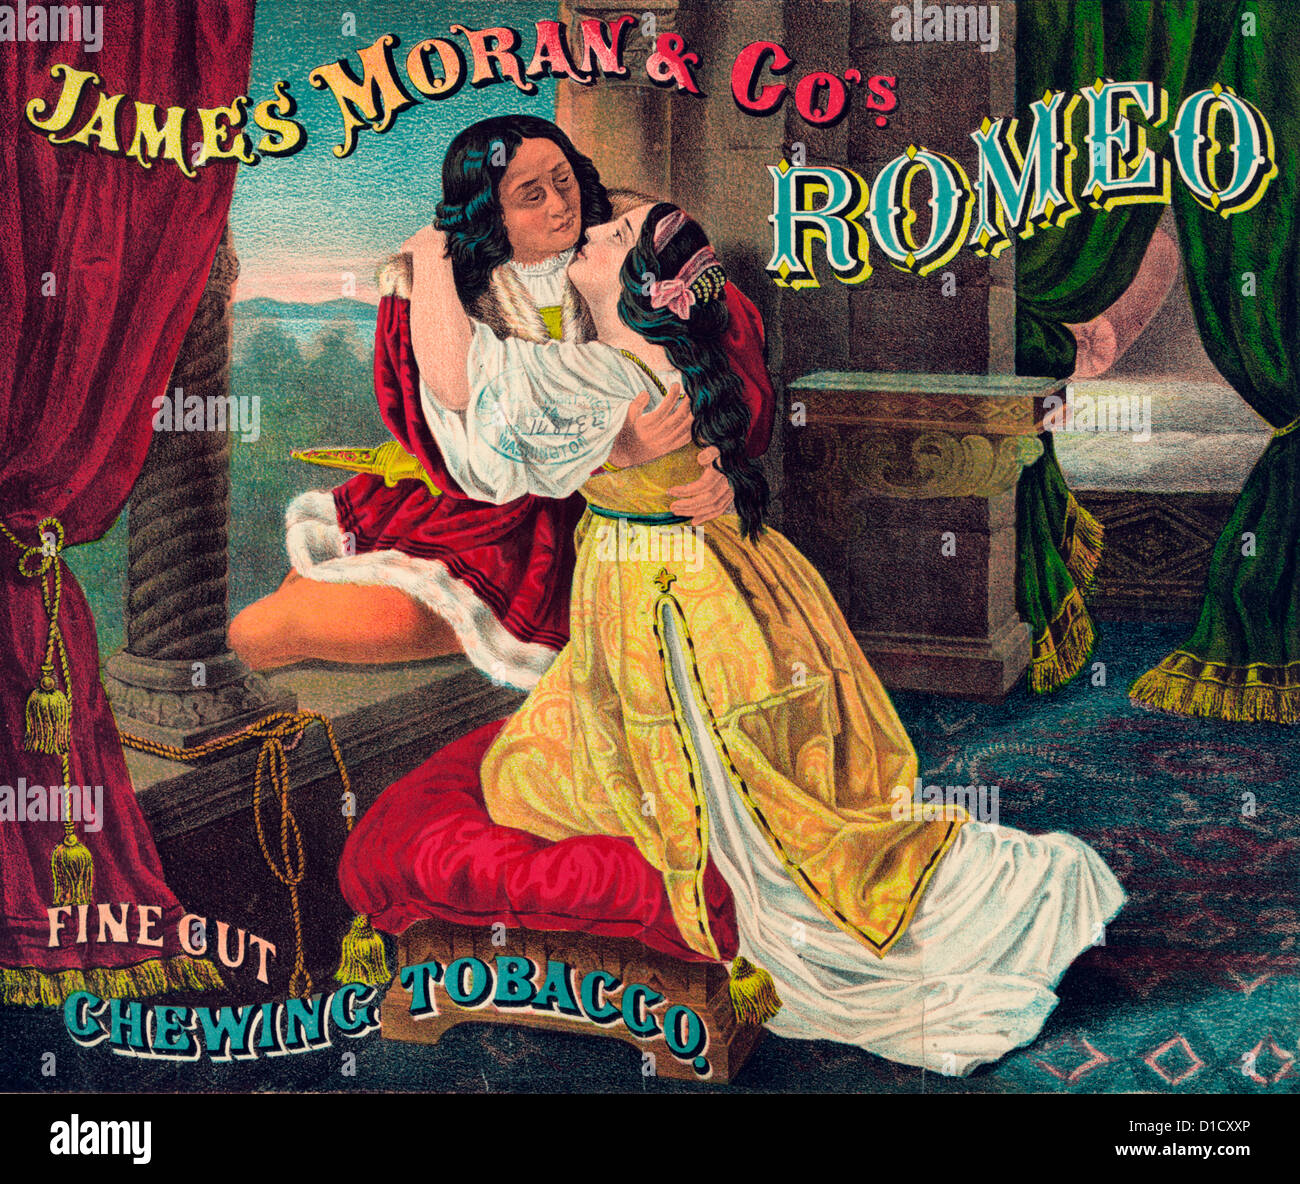 James Moran & Co. Romeo, fein geschnitten, Kautabak - Tabak-Paket-Label zeigt Romeo und Juliet umarmen, durch ein offenes Fenster, wie sie nehmen Abschied von einander, ca. 1874 Stockfoto